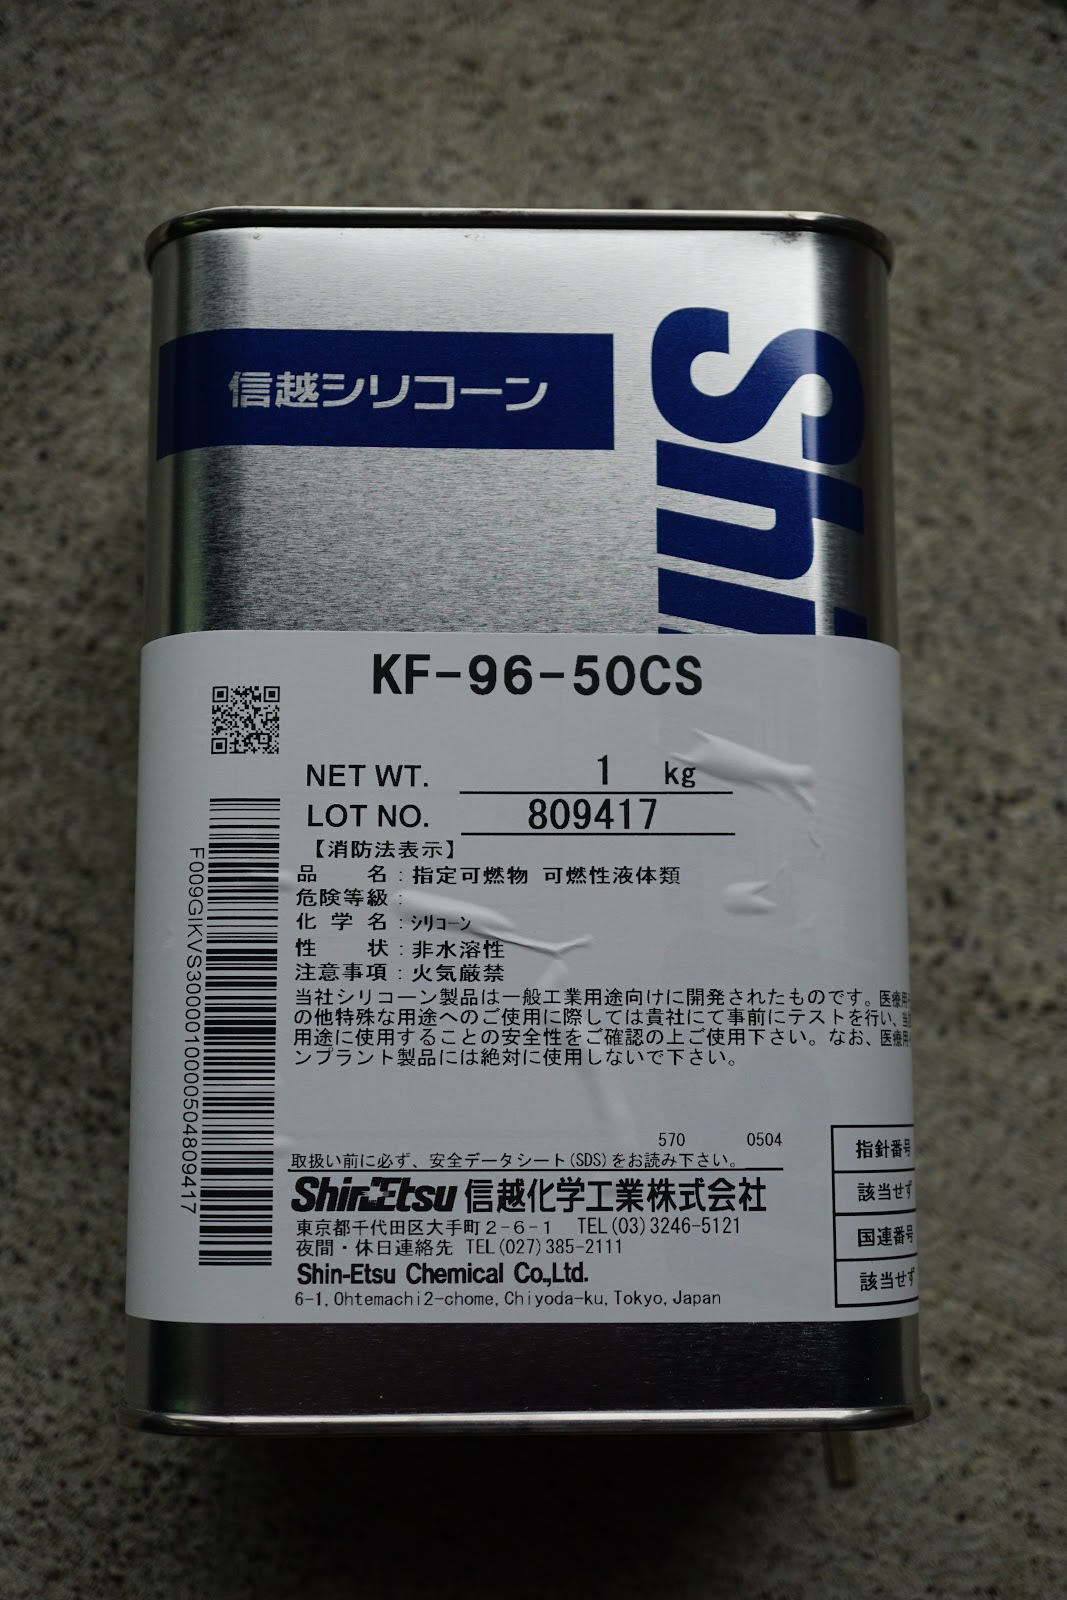 信越 シリコーンオイル50CS 1kg ▽492-1518 KF96-50CS-1 1缶 - 通販